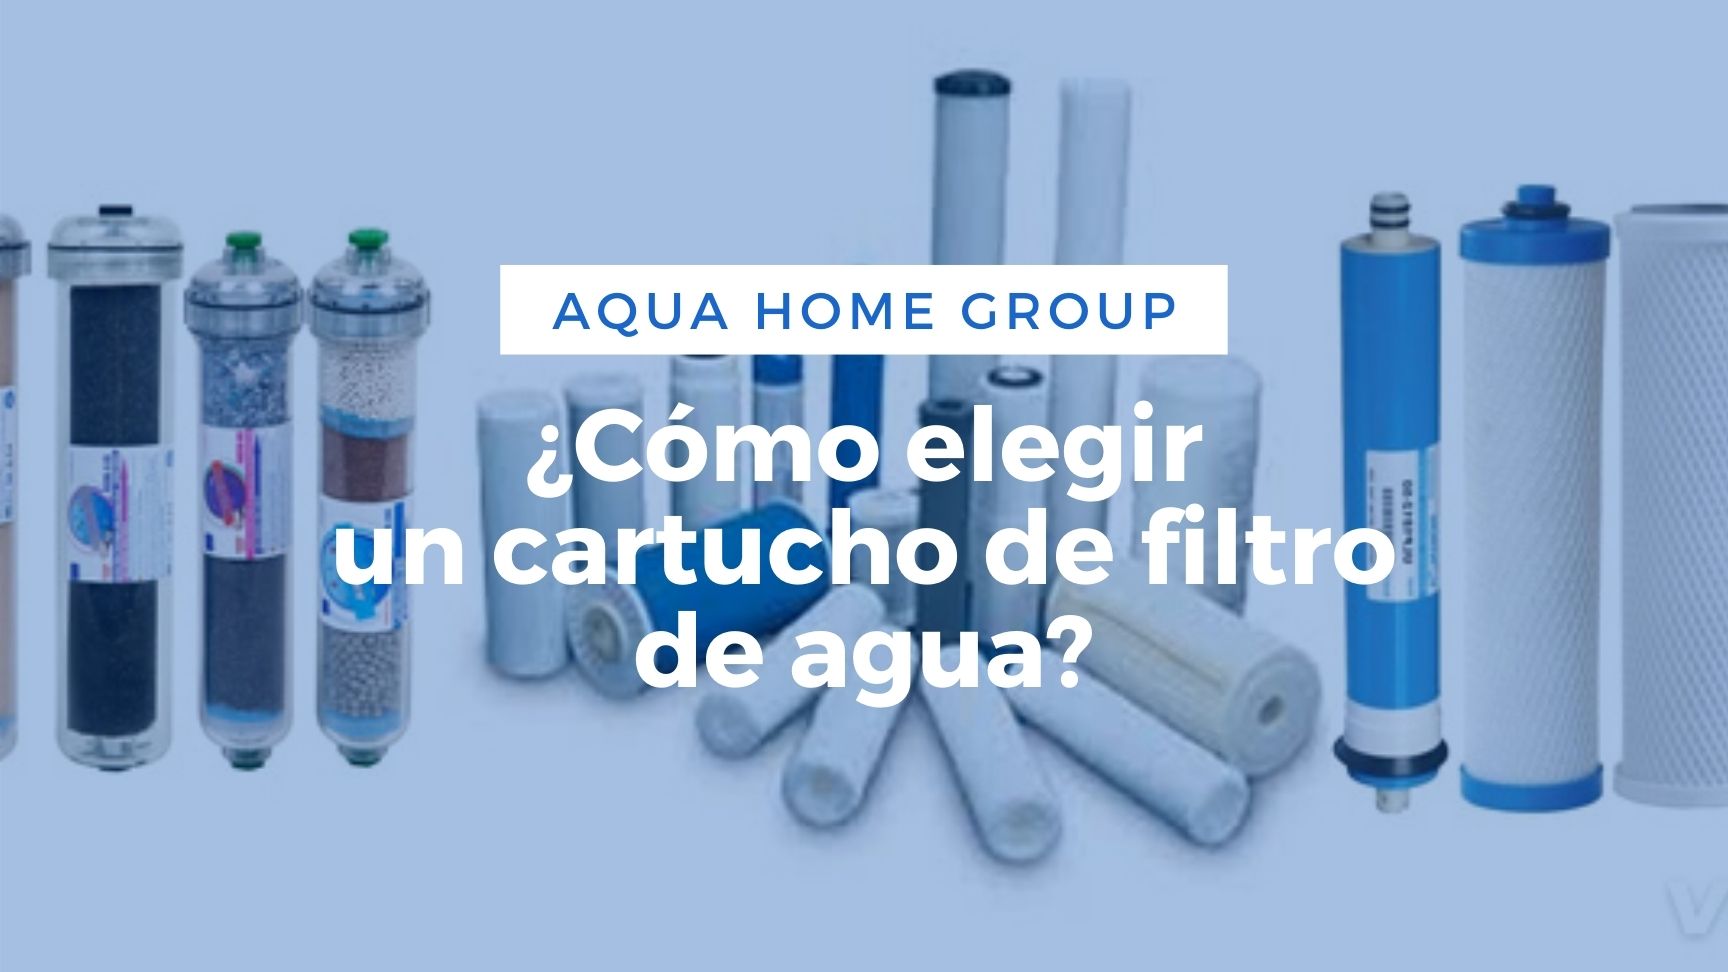  Aqua-Pure Filtro de agua de repuesto de flujo completo